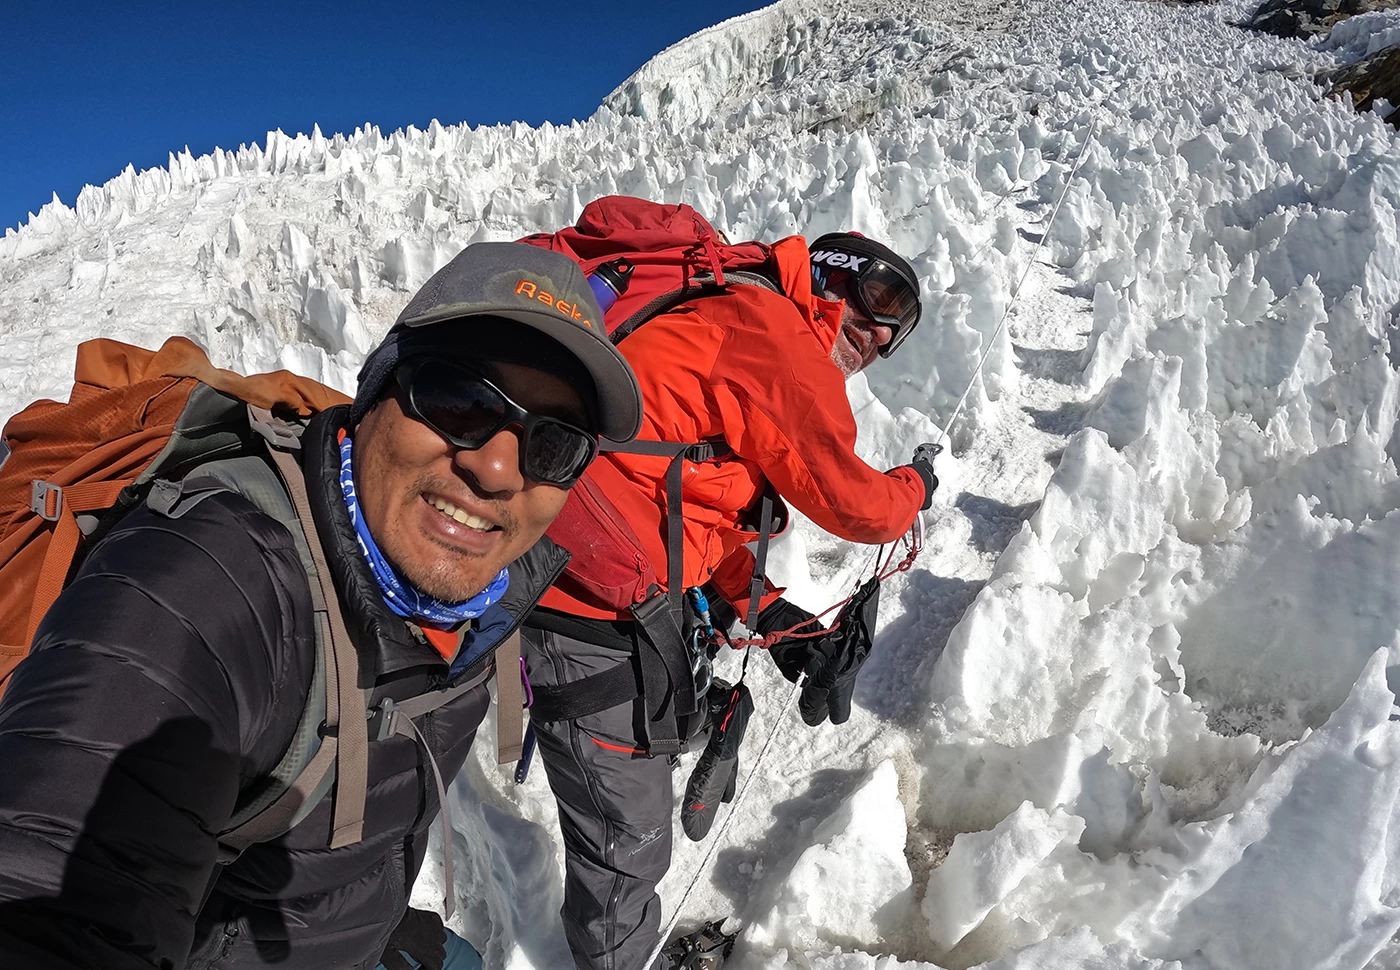  Trekking peak in Nepal, Labuche Peak Climbing. 